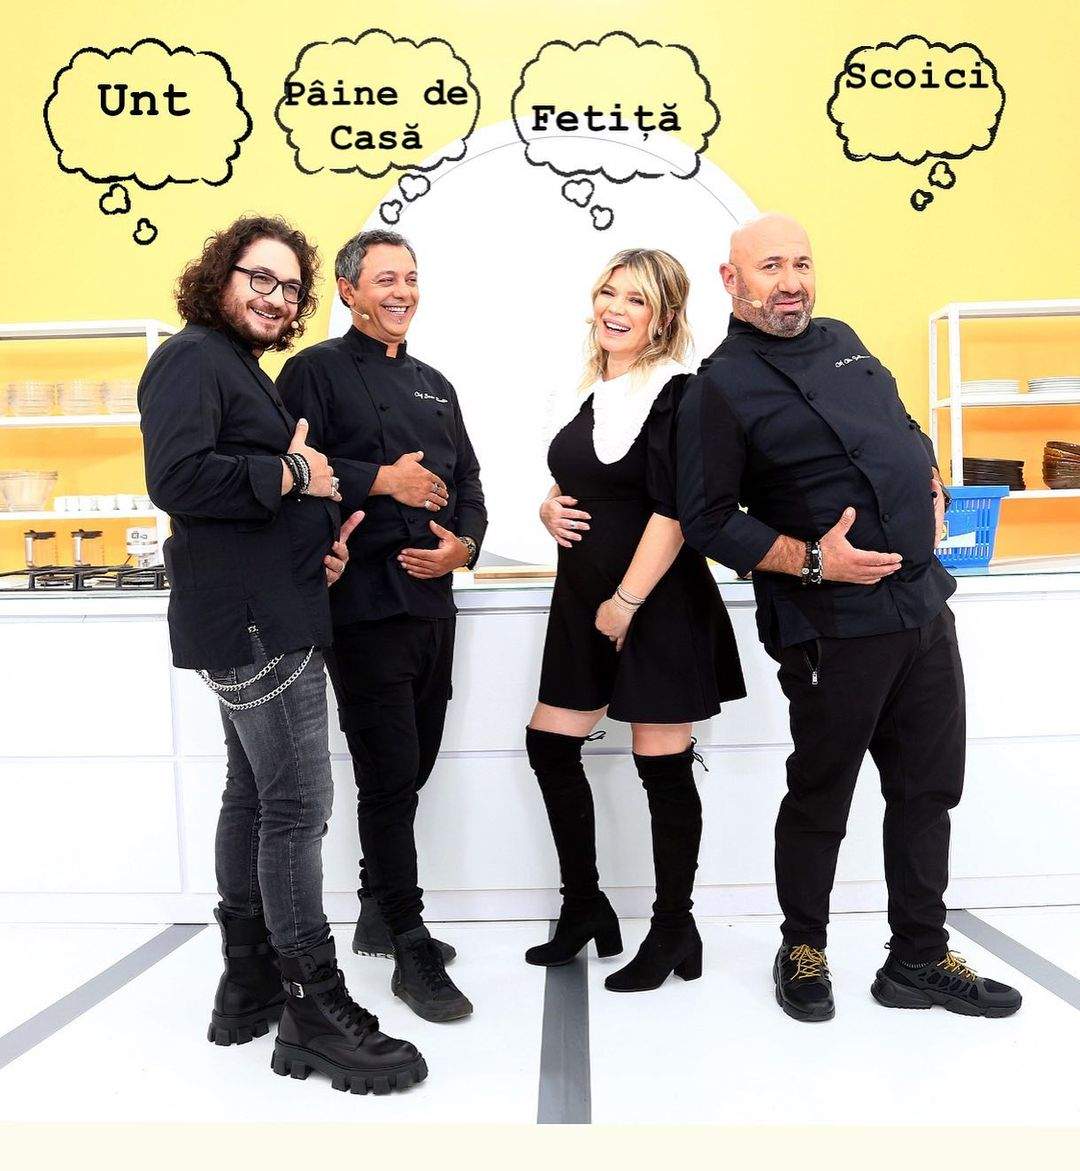 Gina Pistol și cei trei chefi și-au etalat burta, într-o fotografie cu mesaje amuzante